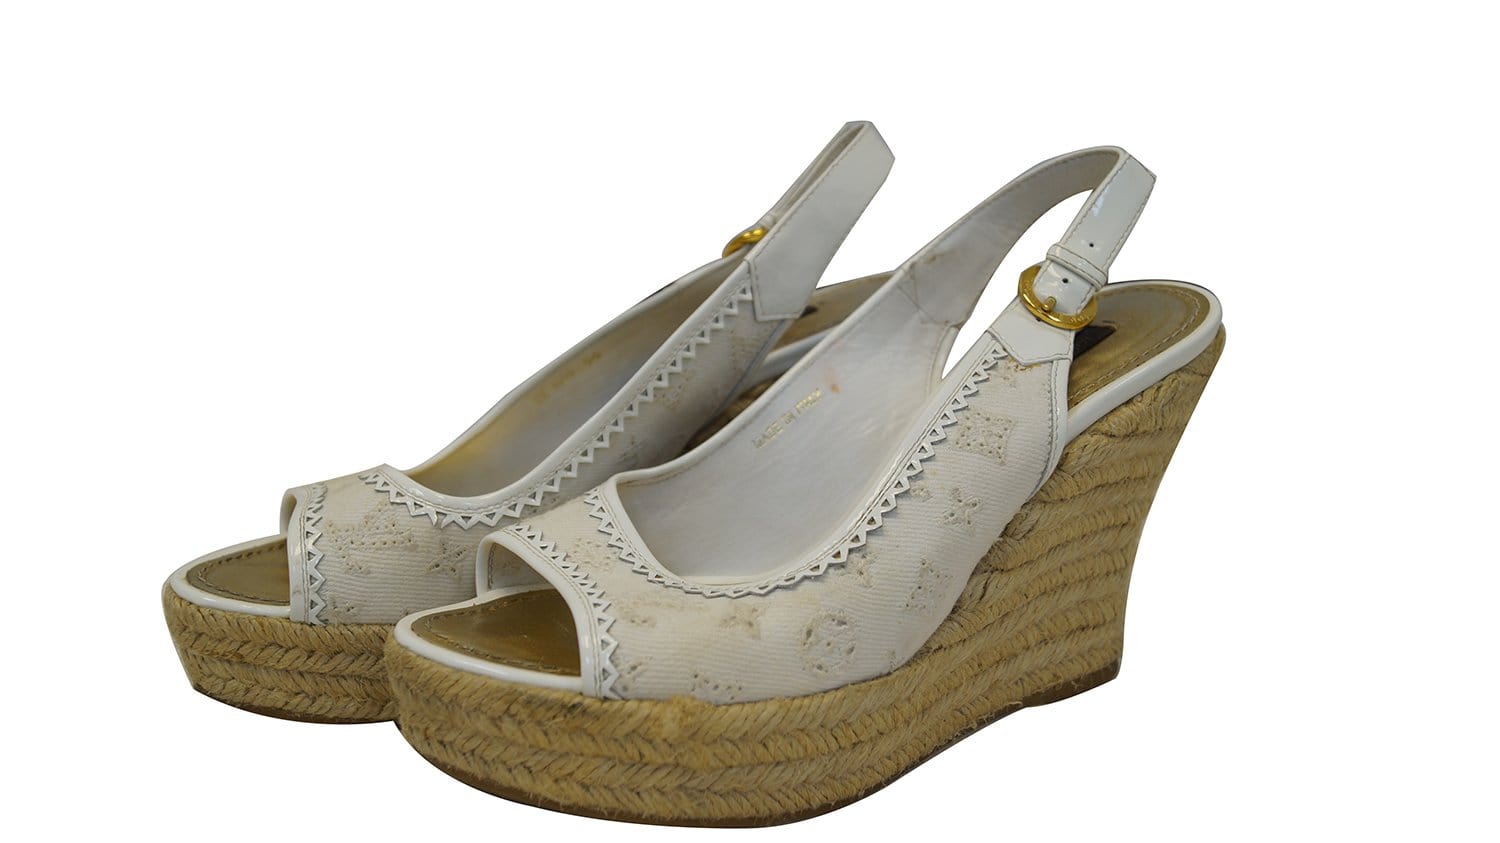 Louis Vuitton Wedge Sandals Auction